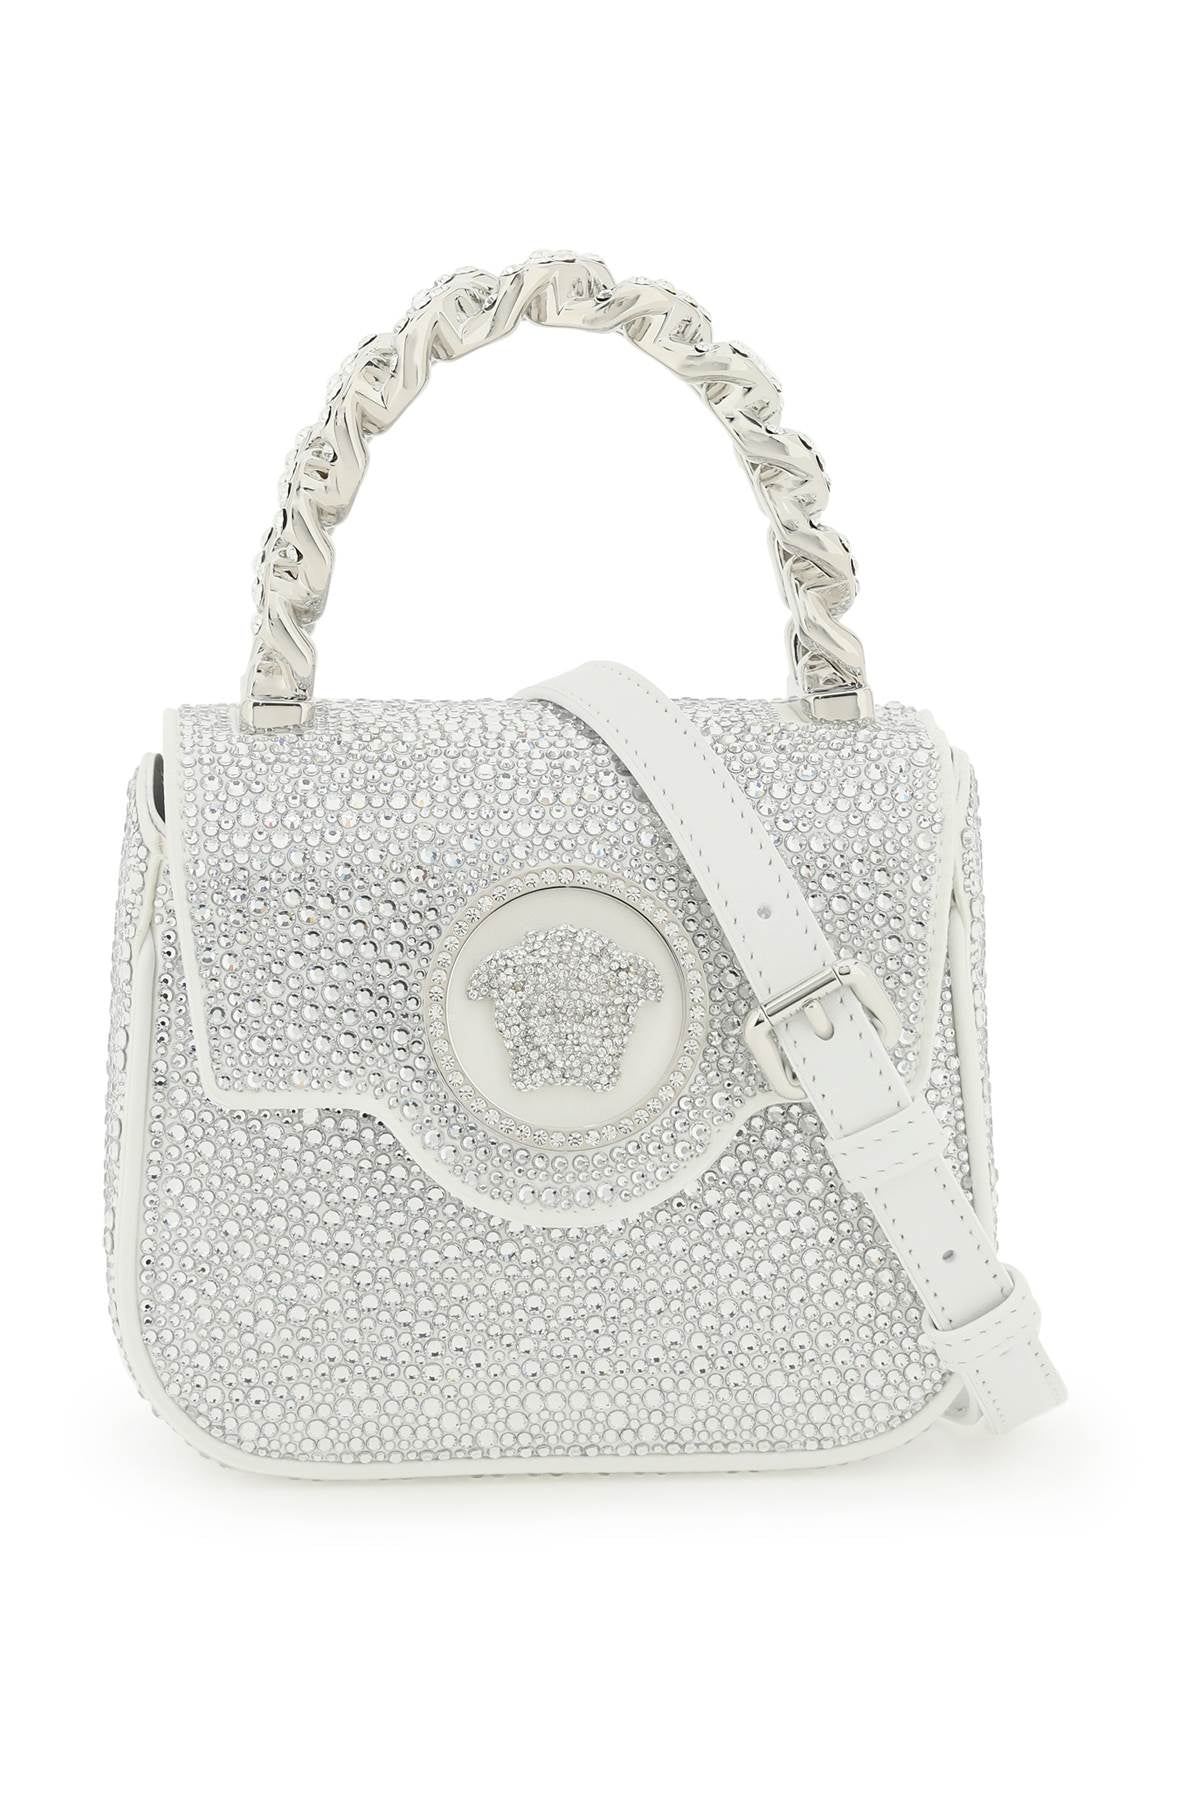 Versace la medusa handbag with crystals-0